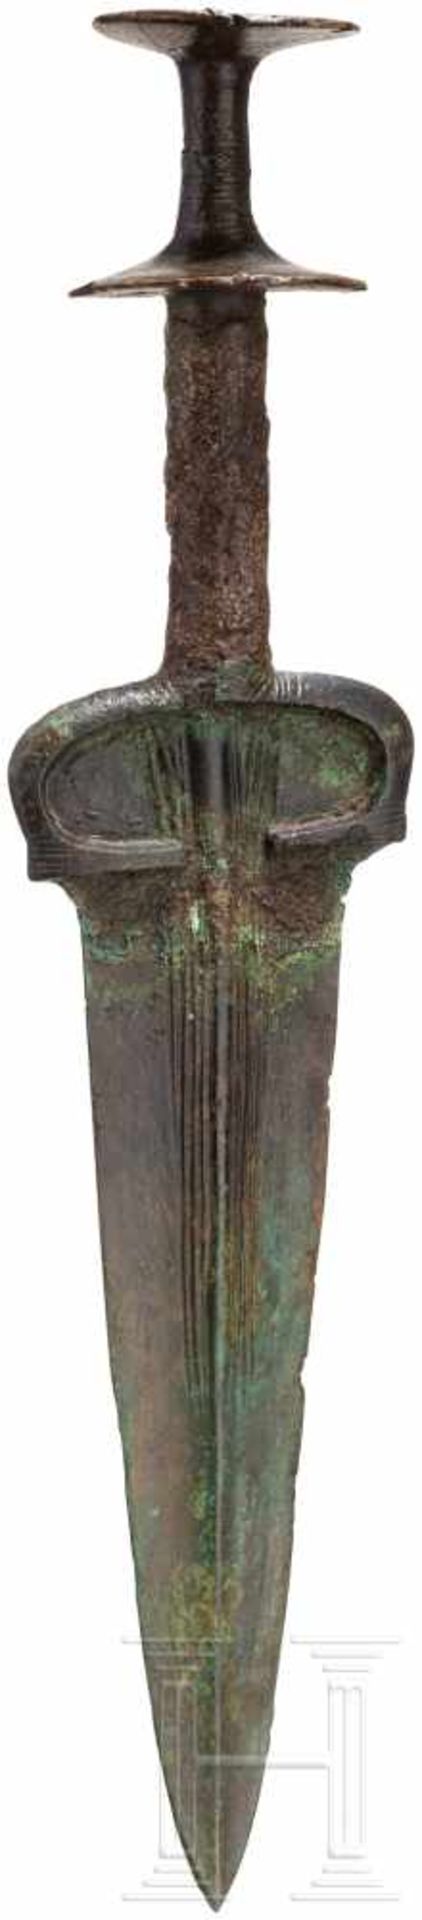 Bronzedolch mit Scheibenknauf, Nordiran - Luristan, um 1000 v. Chr.Klinge und Griff separat - Bild 2 aus 4